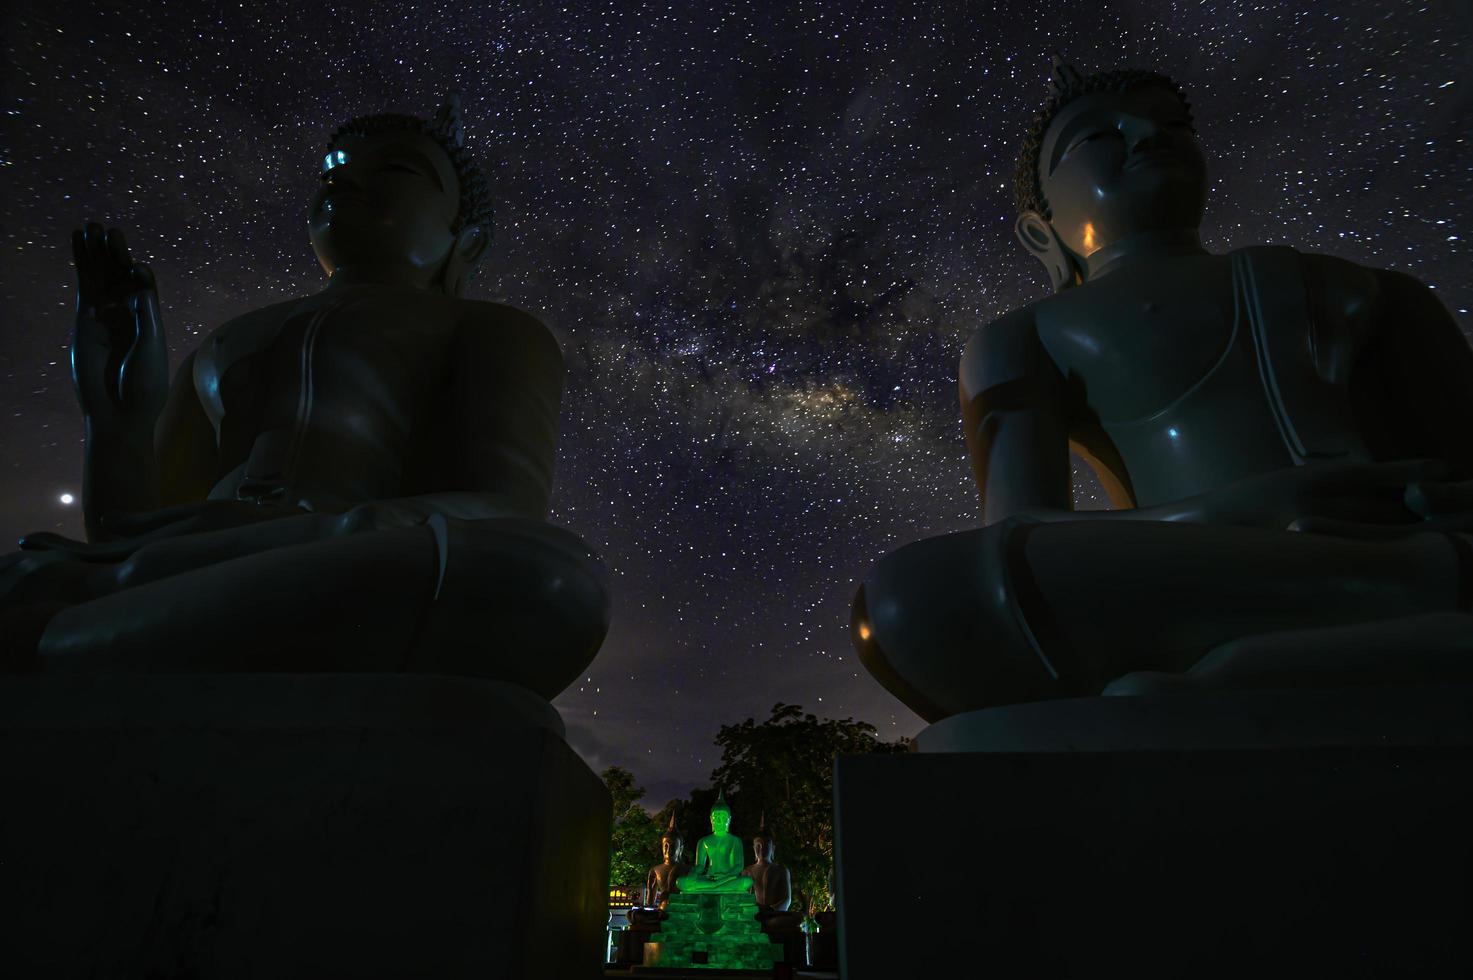 Watpapromyan templo budista respeto, calma la mente. en tailandia, provincia de chachoengsao foto